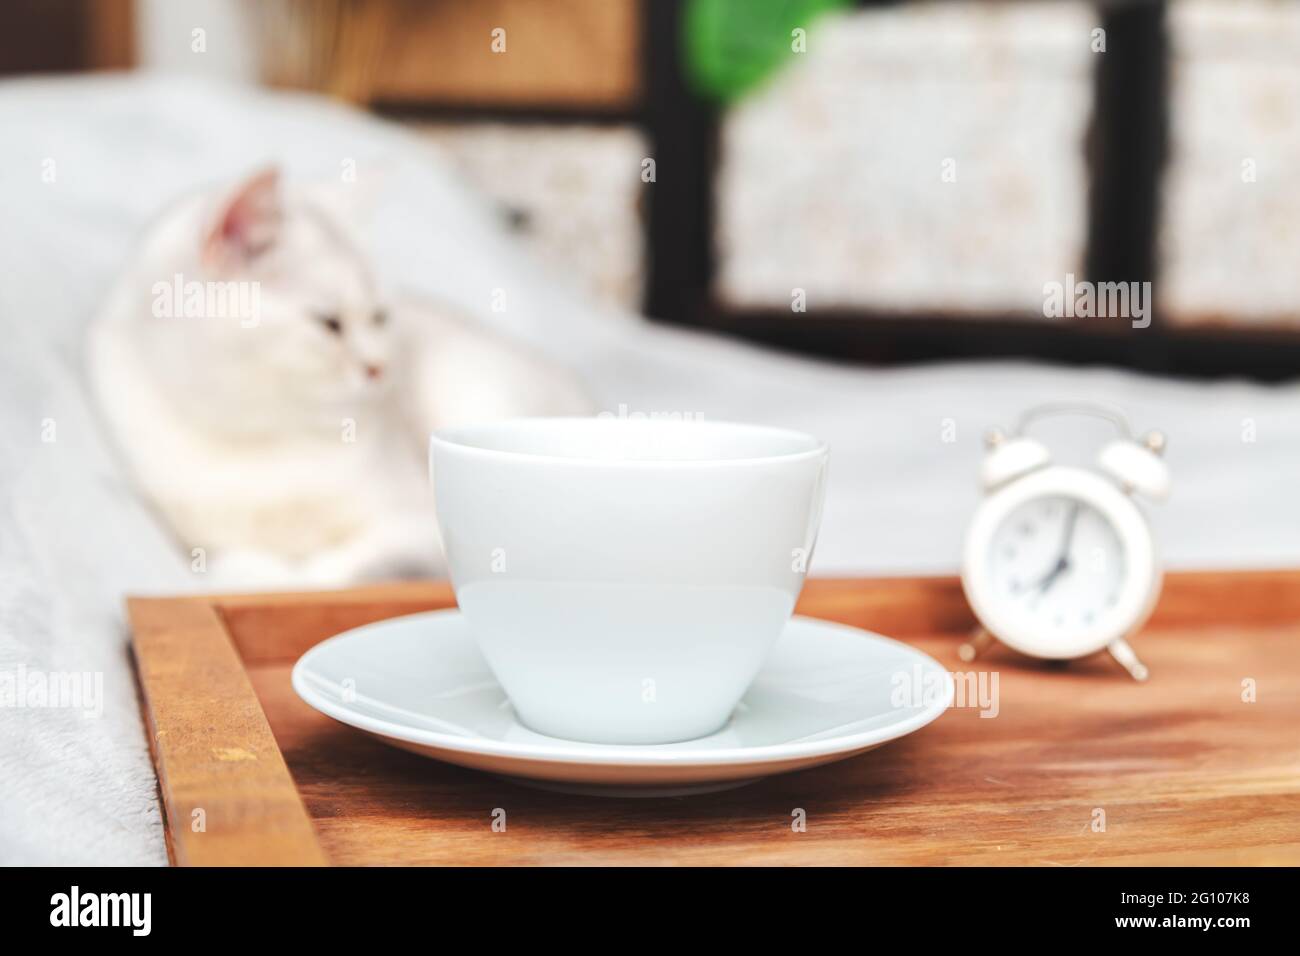 Faule weiße britische Katze schläft auf dem Bett. Neben dem Tablett mit einer Tasse Kaffee und Wecker. Am frühen Morgen. Selektiver Fokus. Stockfoto